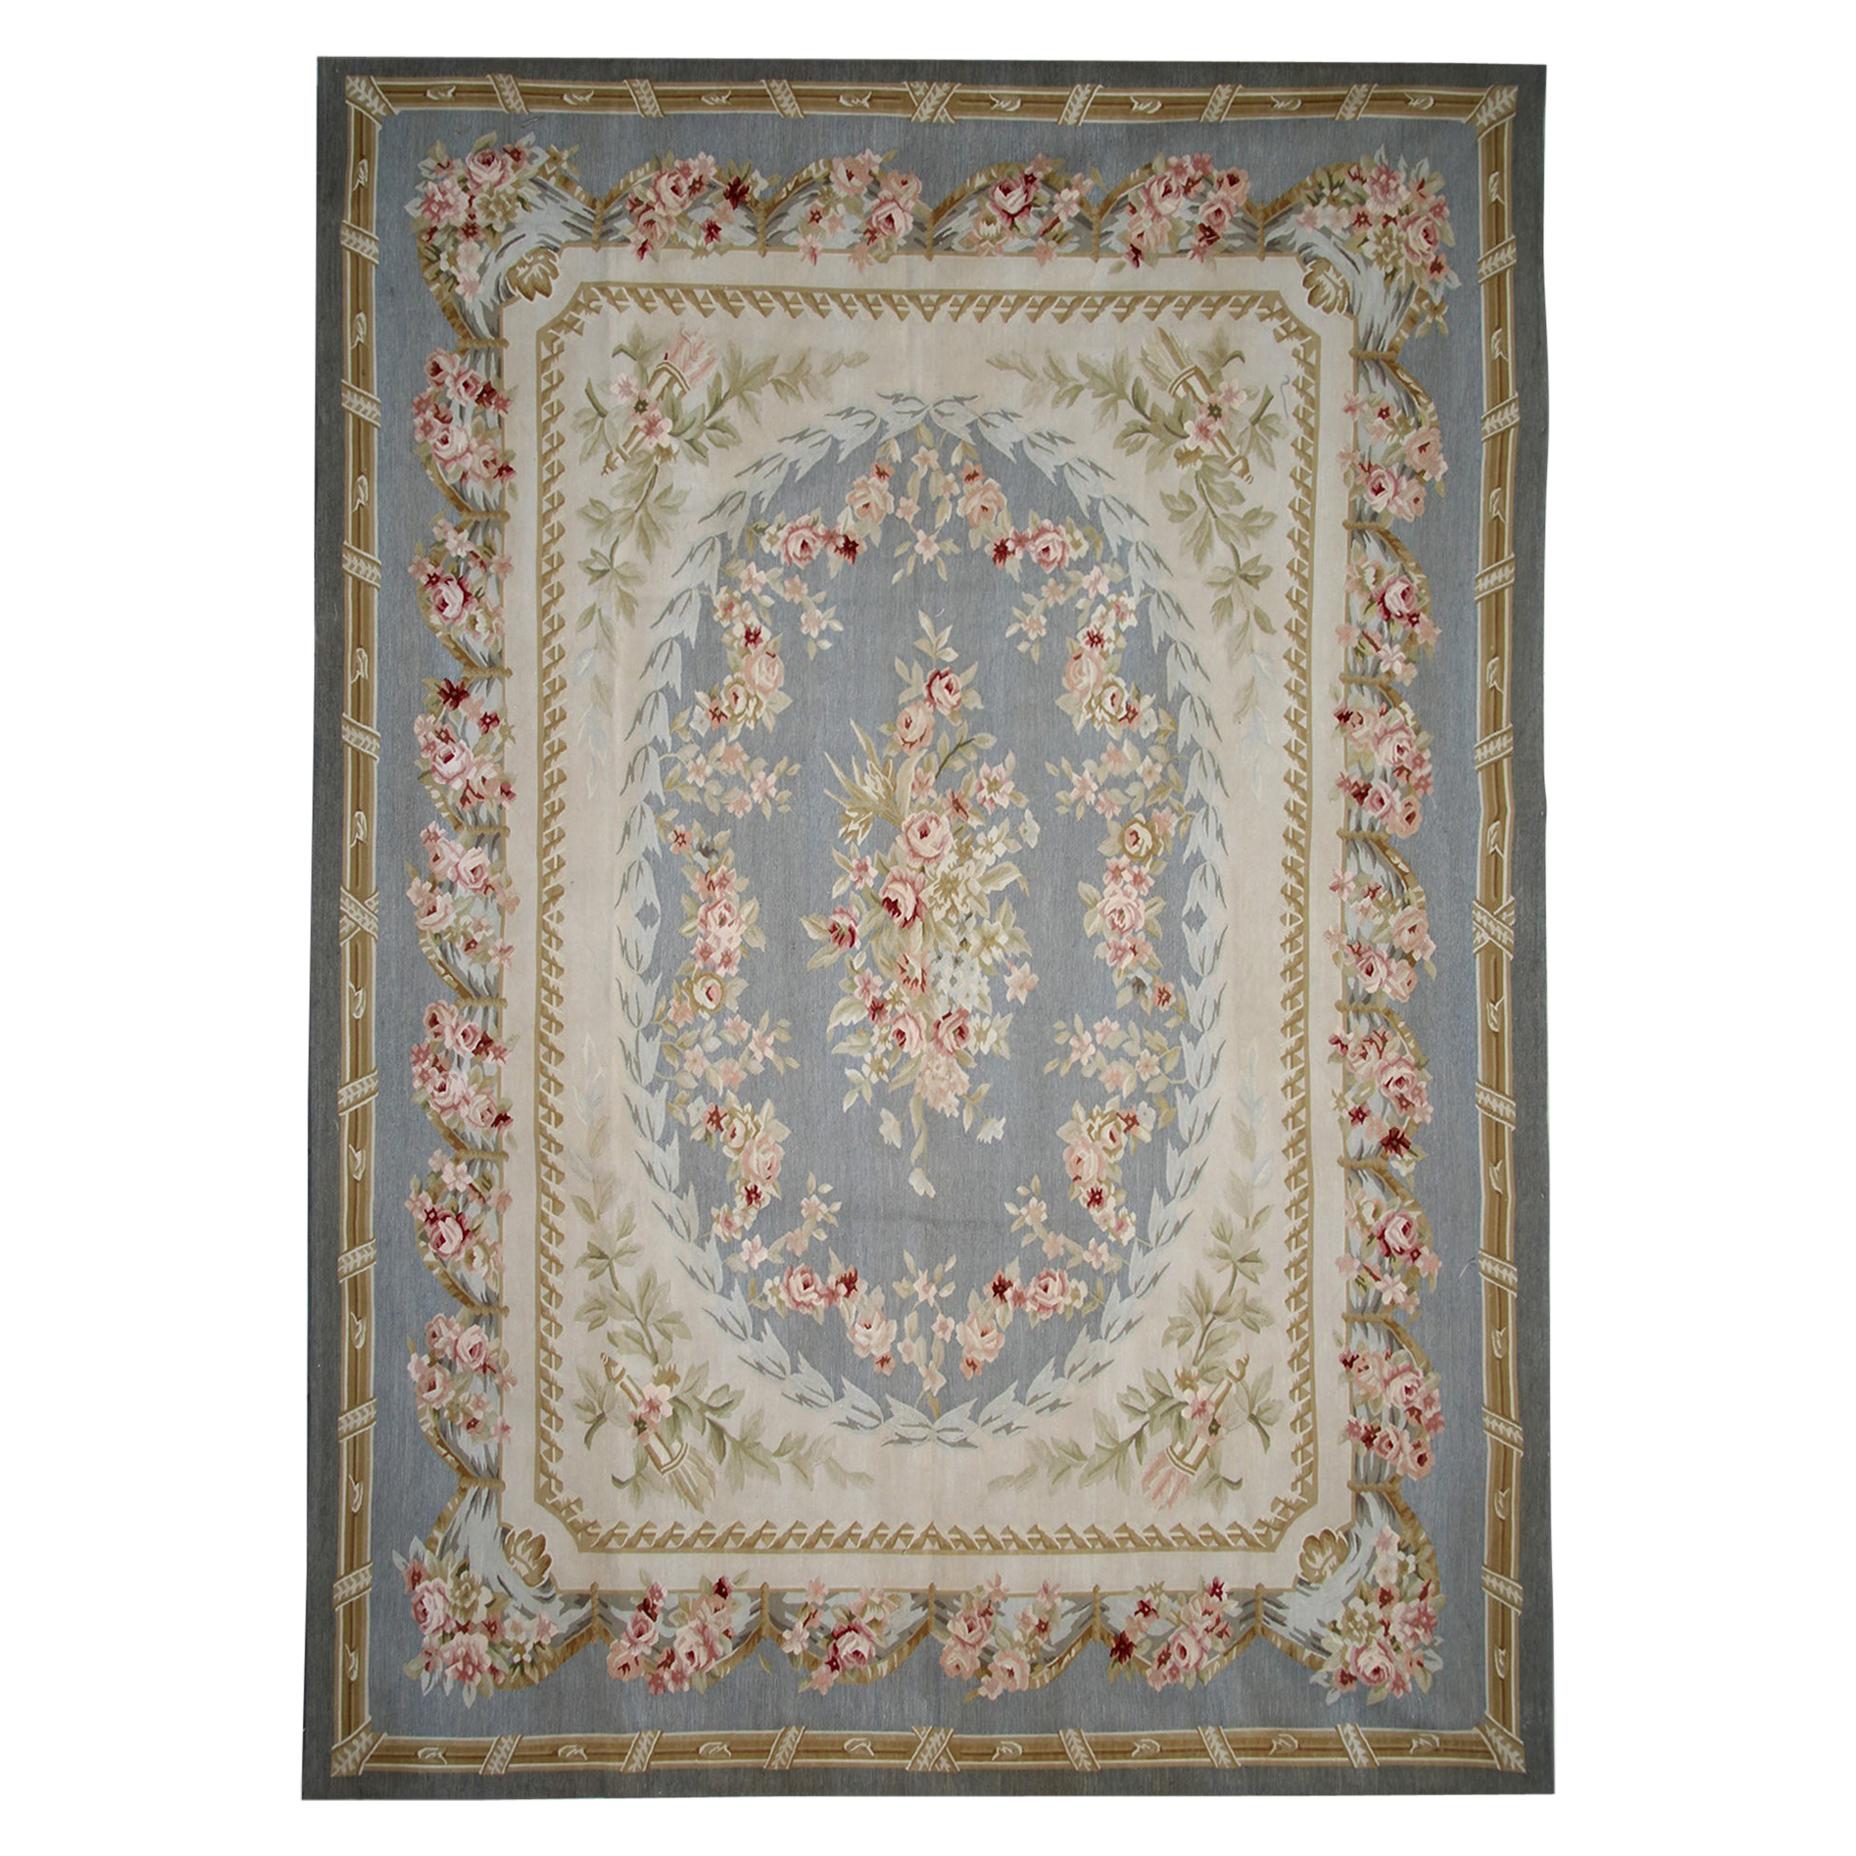 Vintage-Teppich im Aubusson-Stil, blauer, geblümter Gobelinstickerei, Landhausstil